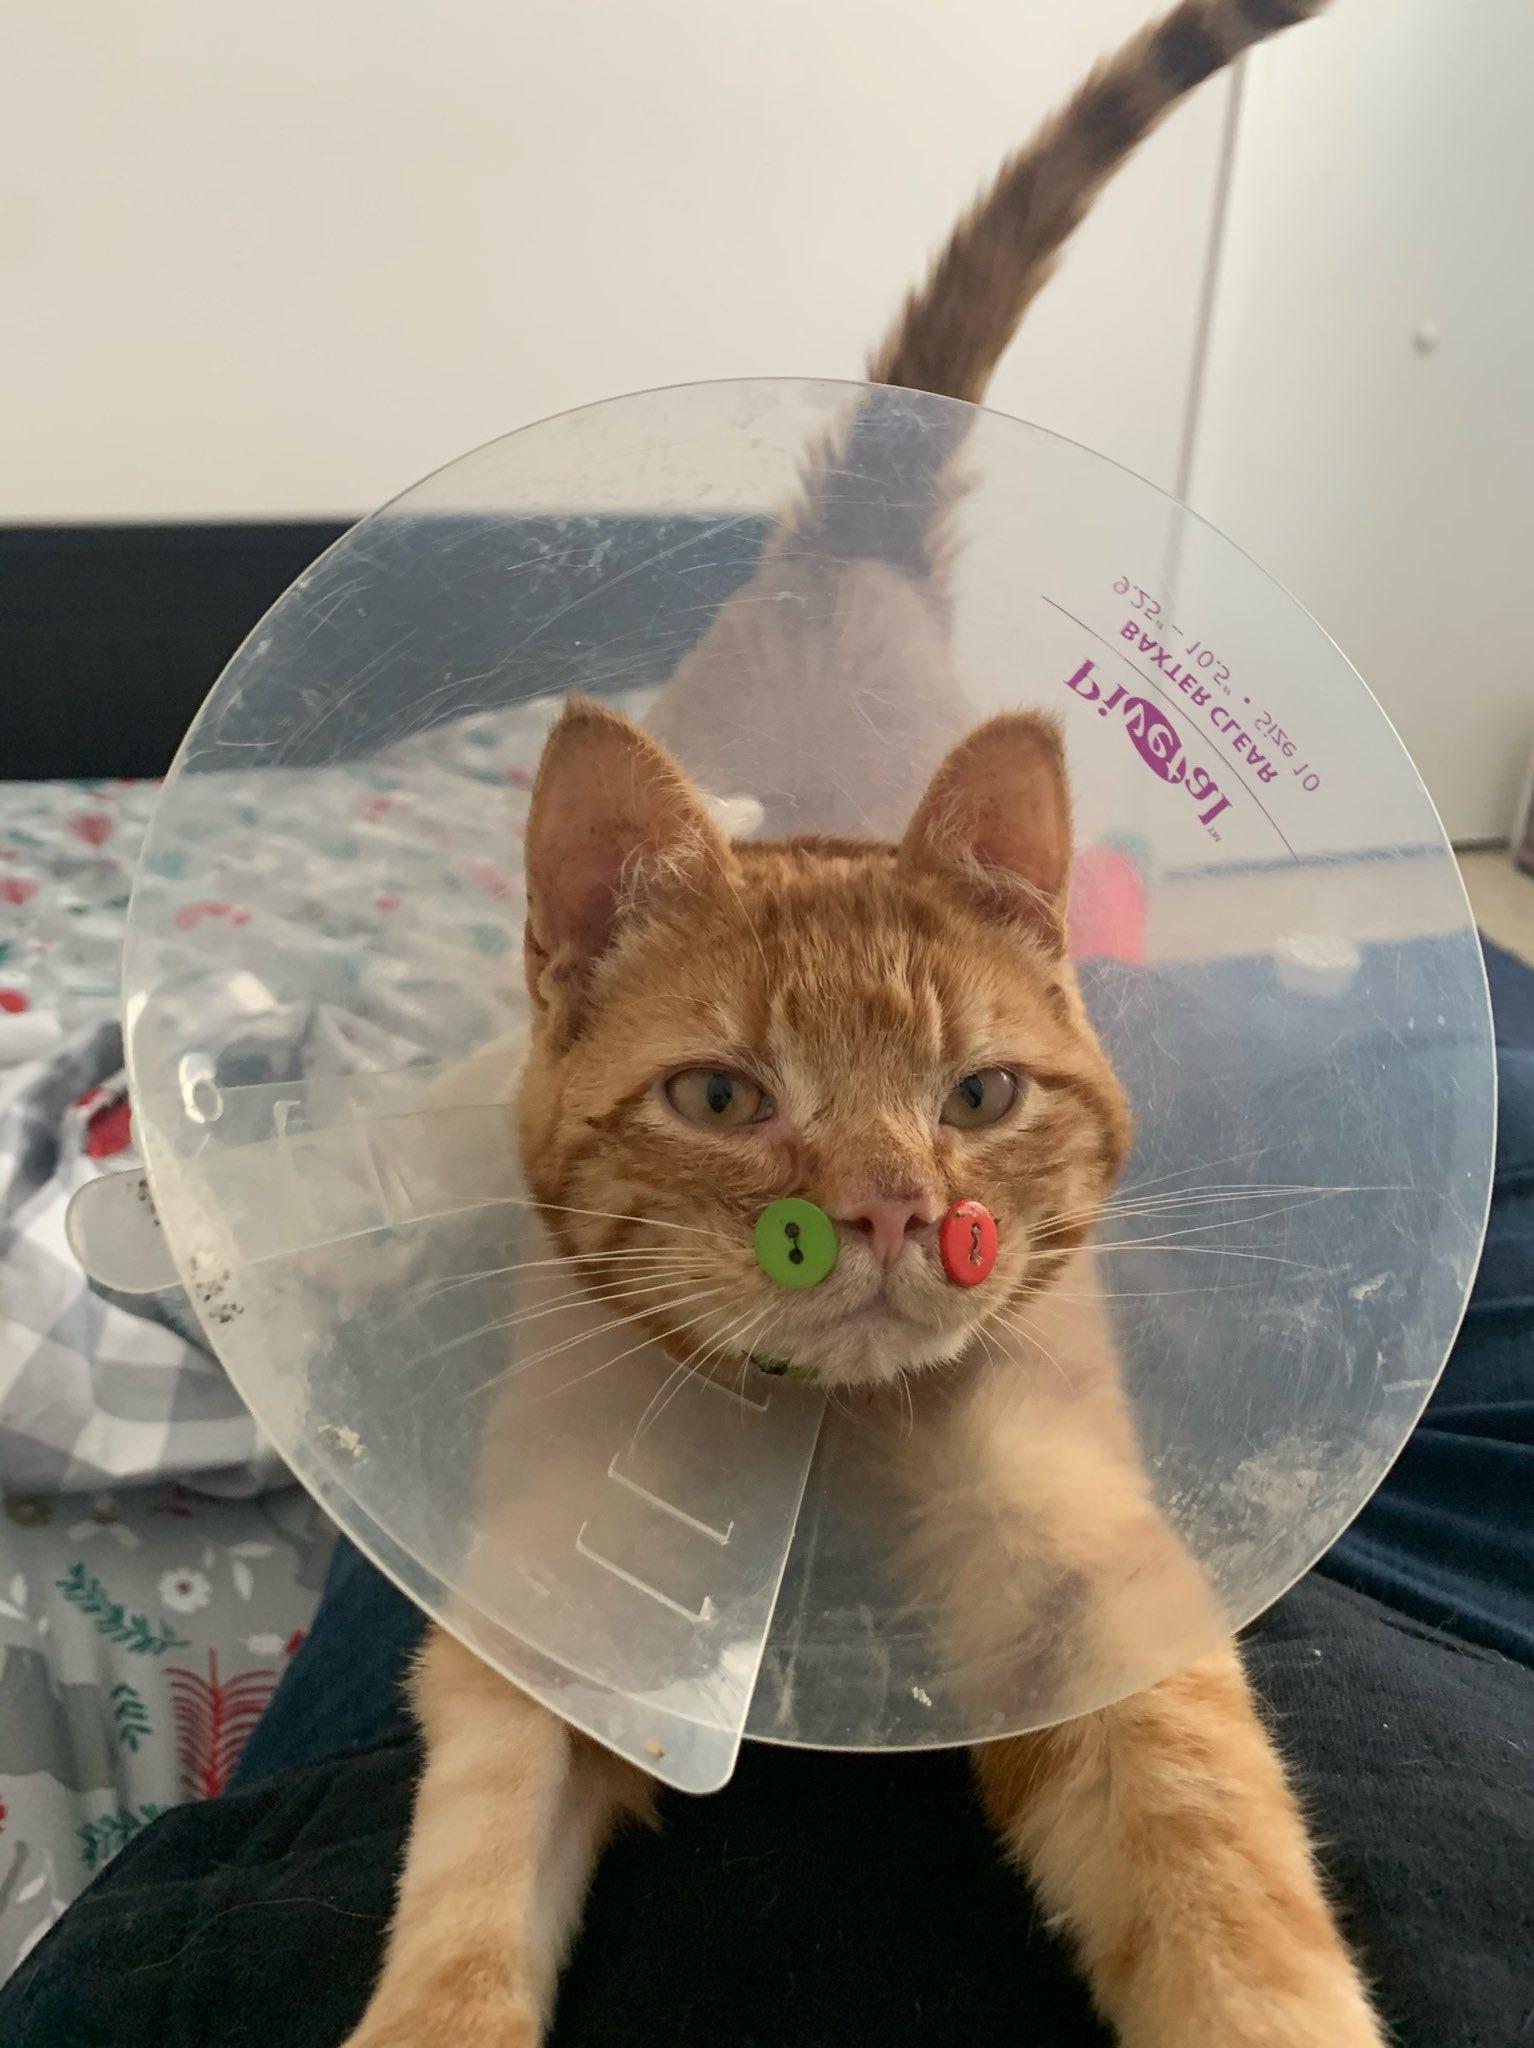 ABDde yüzü parçalanmış kedi düğmelerle tedavi edildi